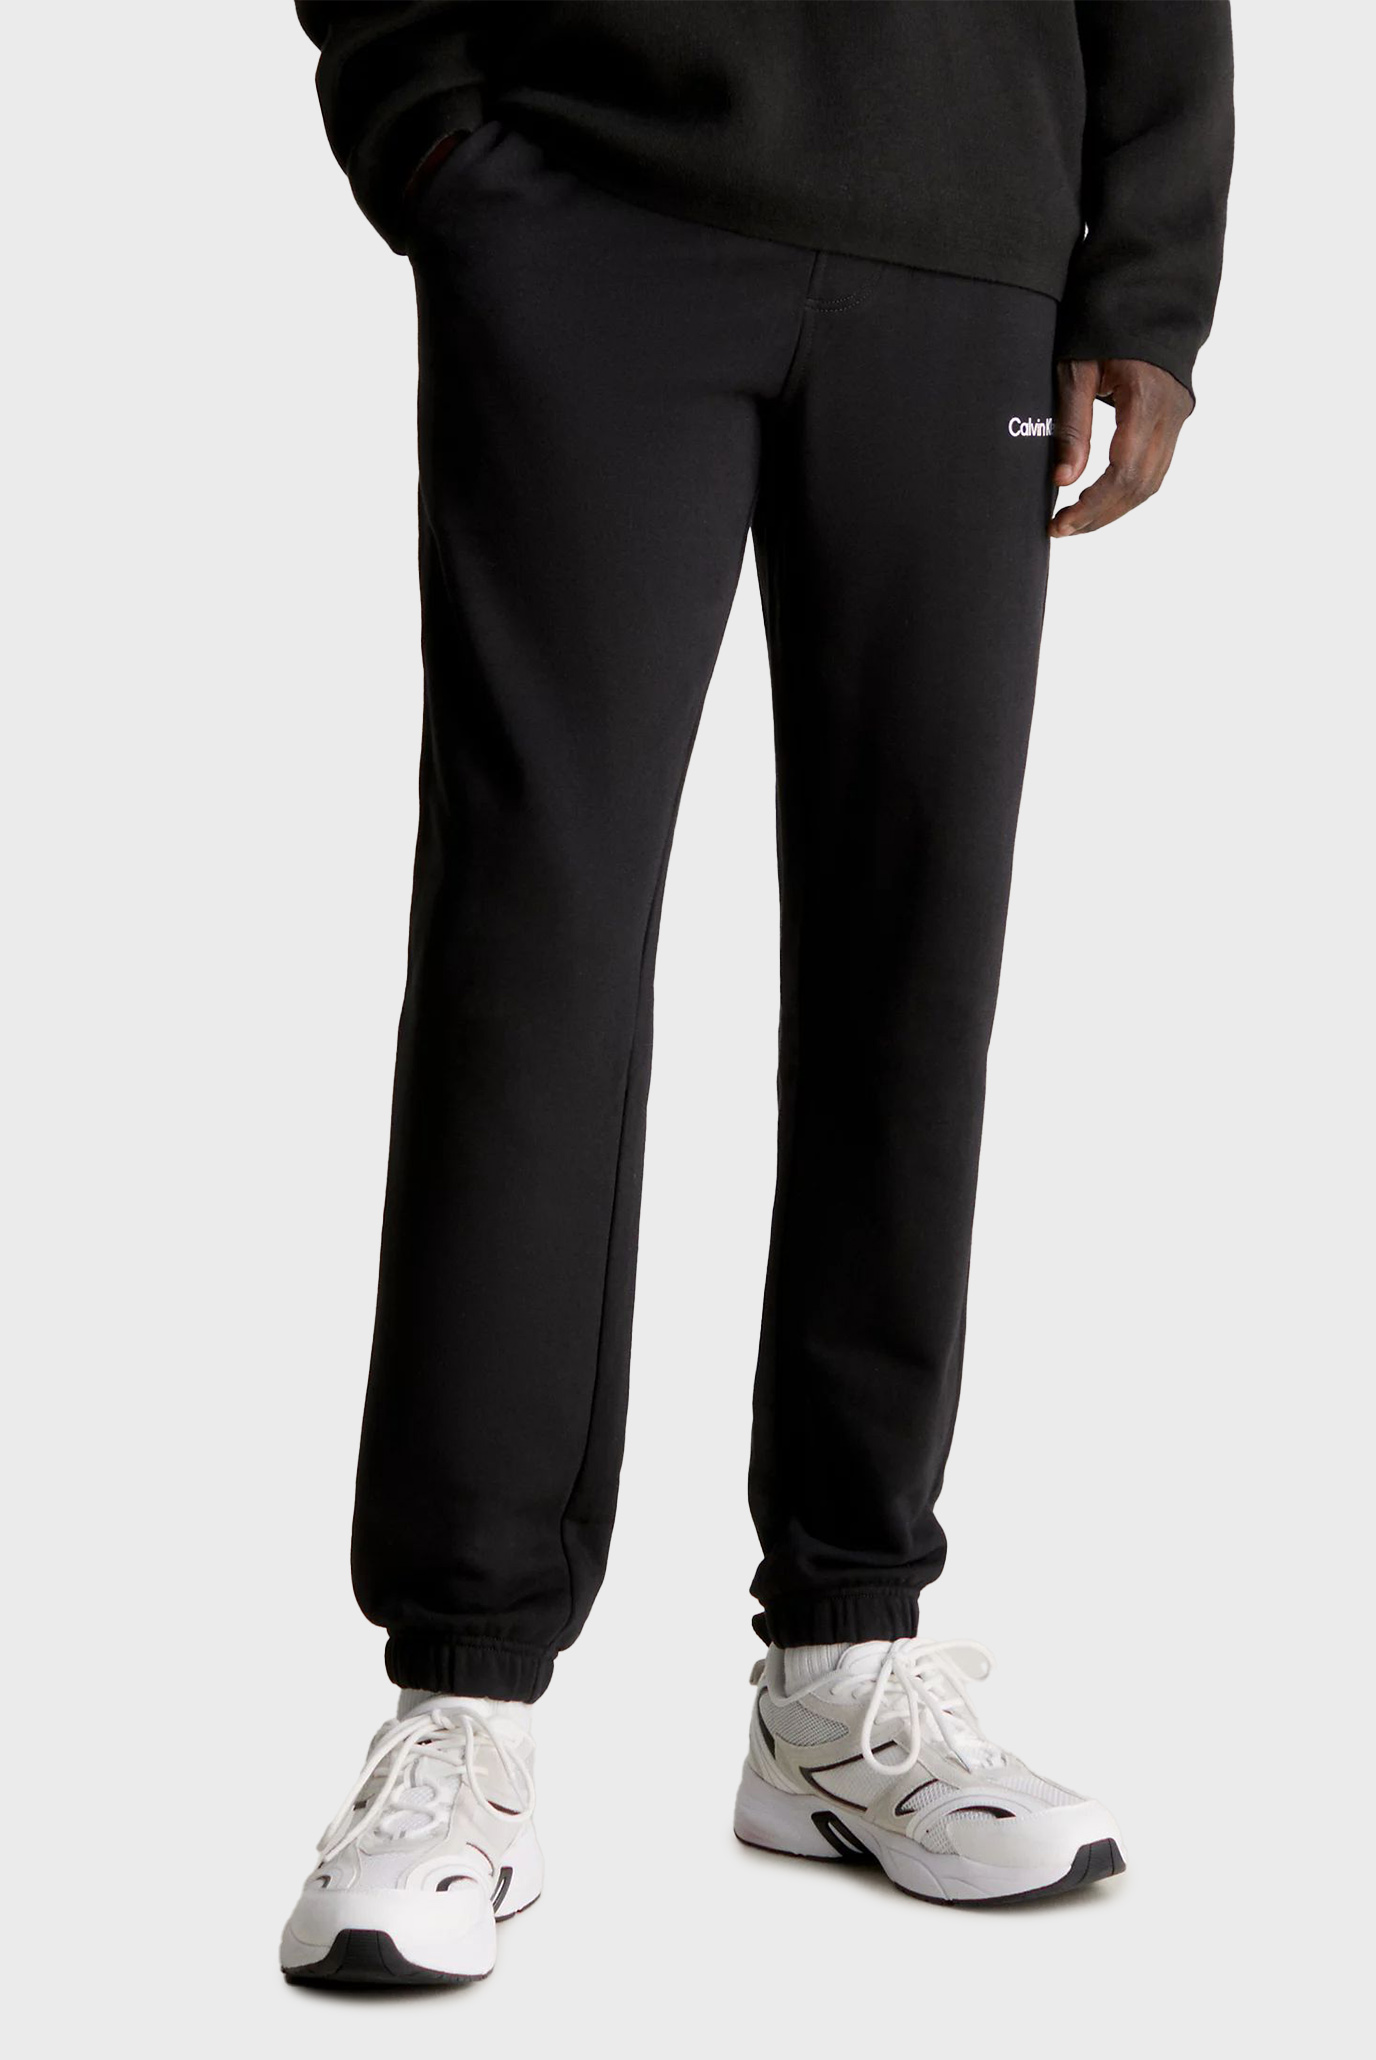 Чоловічі чорні спортивні штани INSTITUTIONAL HWK PANT 1